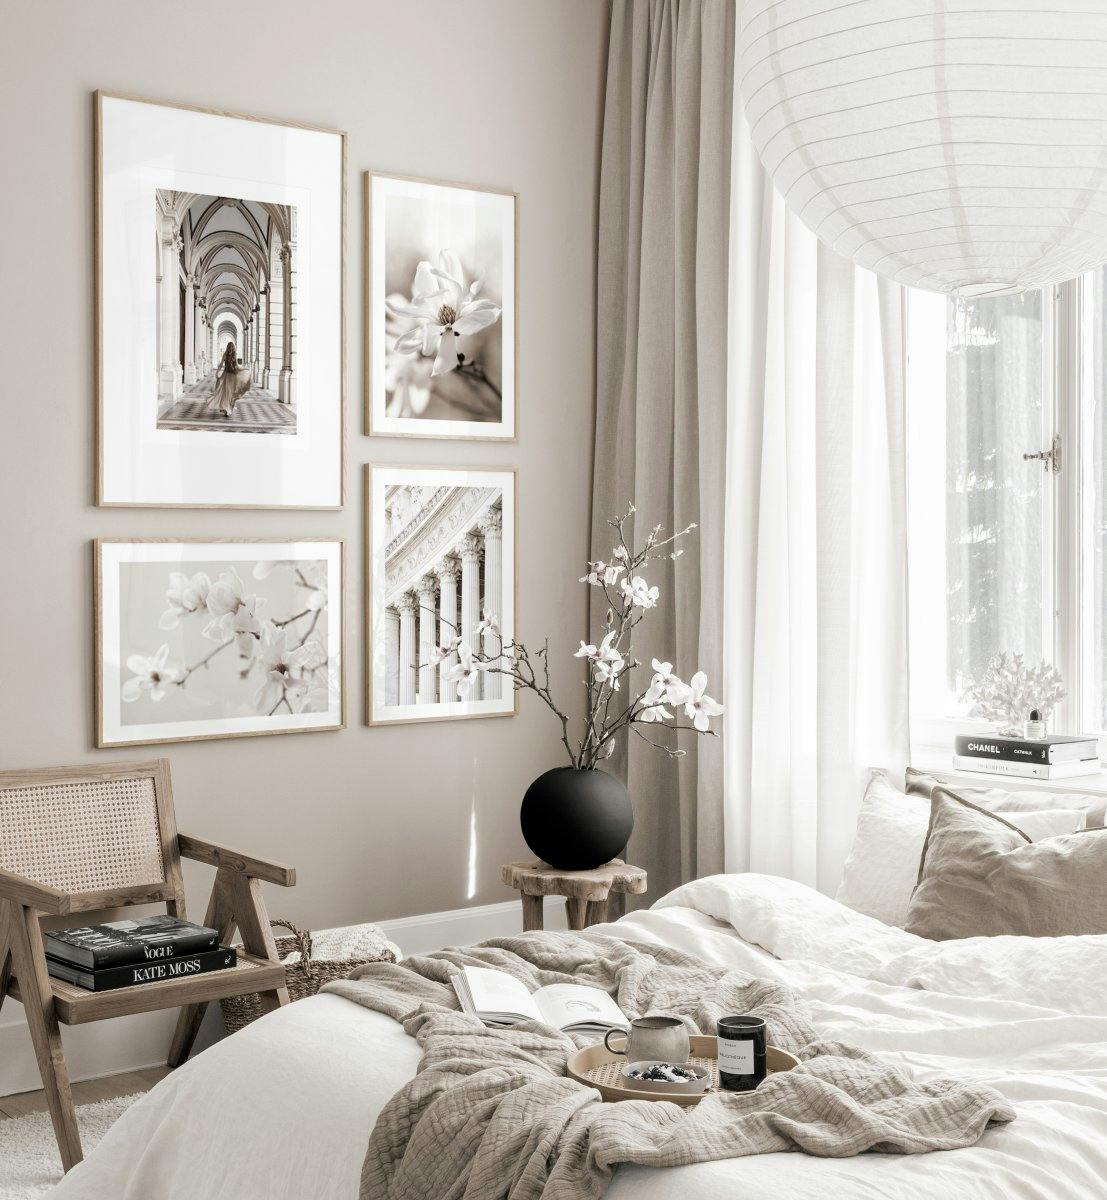 Stupendi poster di architettura con fiori bianchi e design scandinavo e cornici in rovere